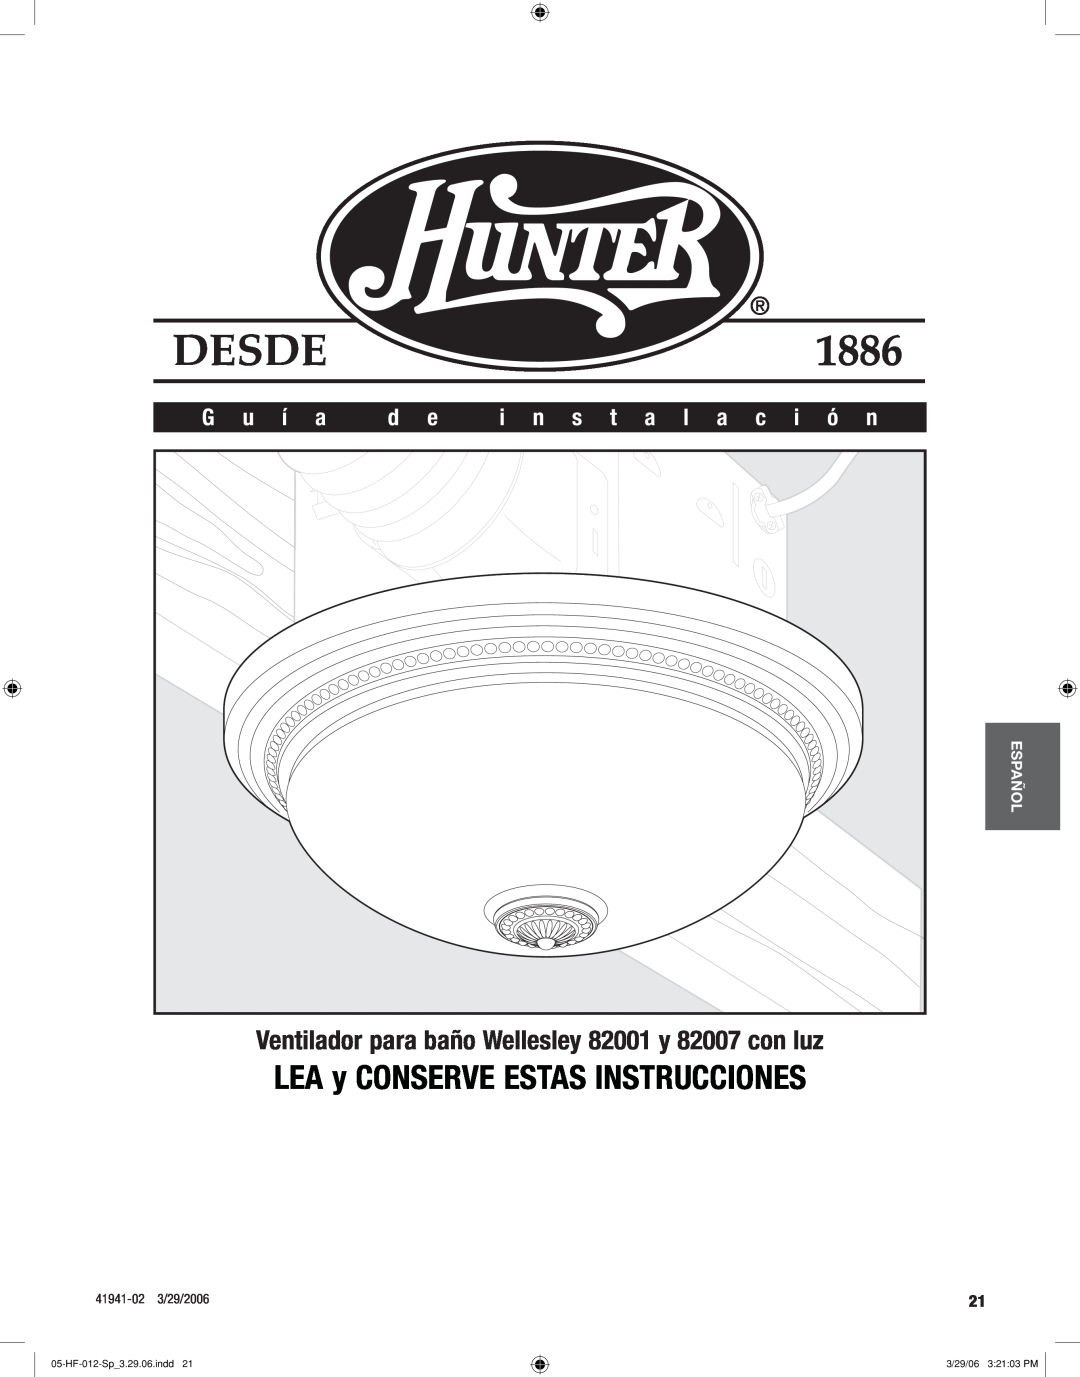 Hunter Fan LEA y CONSERVE ESTAS INSTRUCCIONES, Ventilador para baño Wellesley 82001 y 82007 con luz, G u í a, Desde 